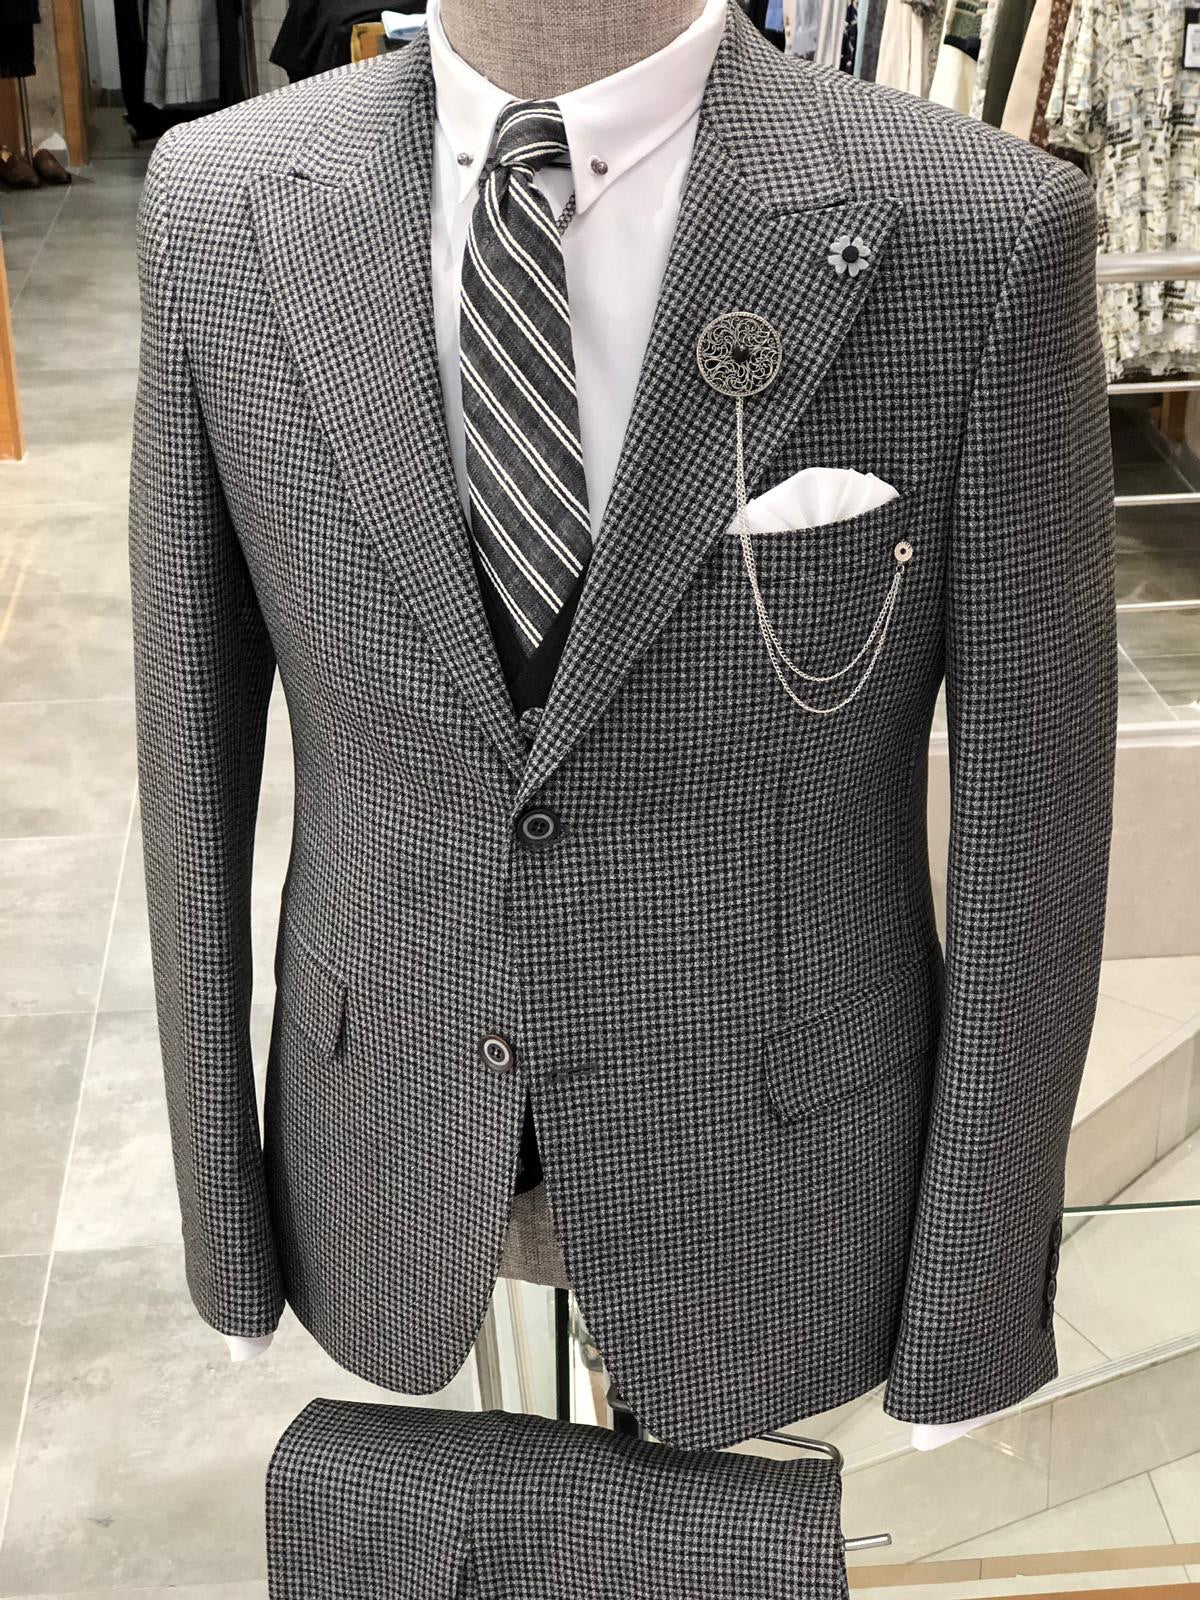 Daniel Gray Slim-Fit Patterned Suit